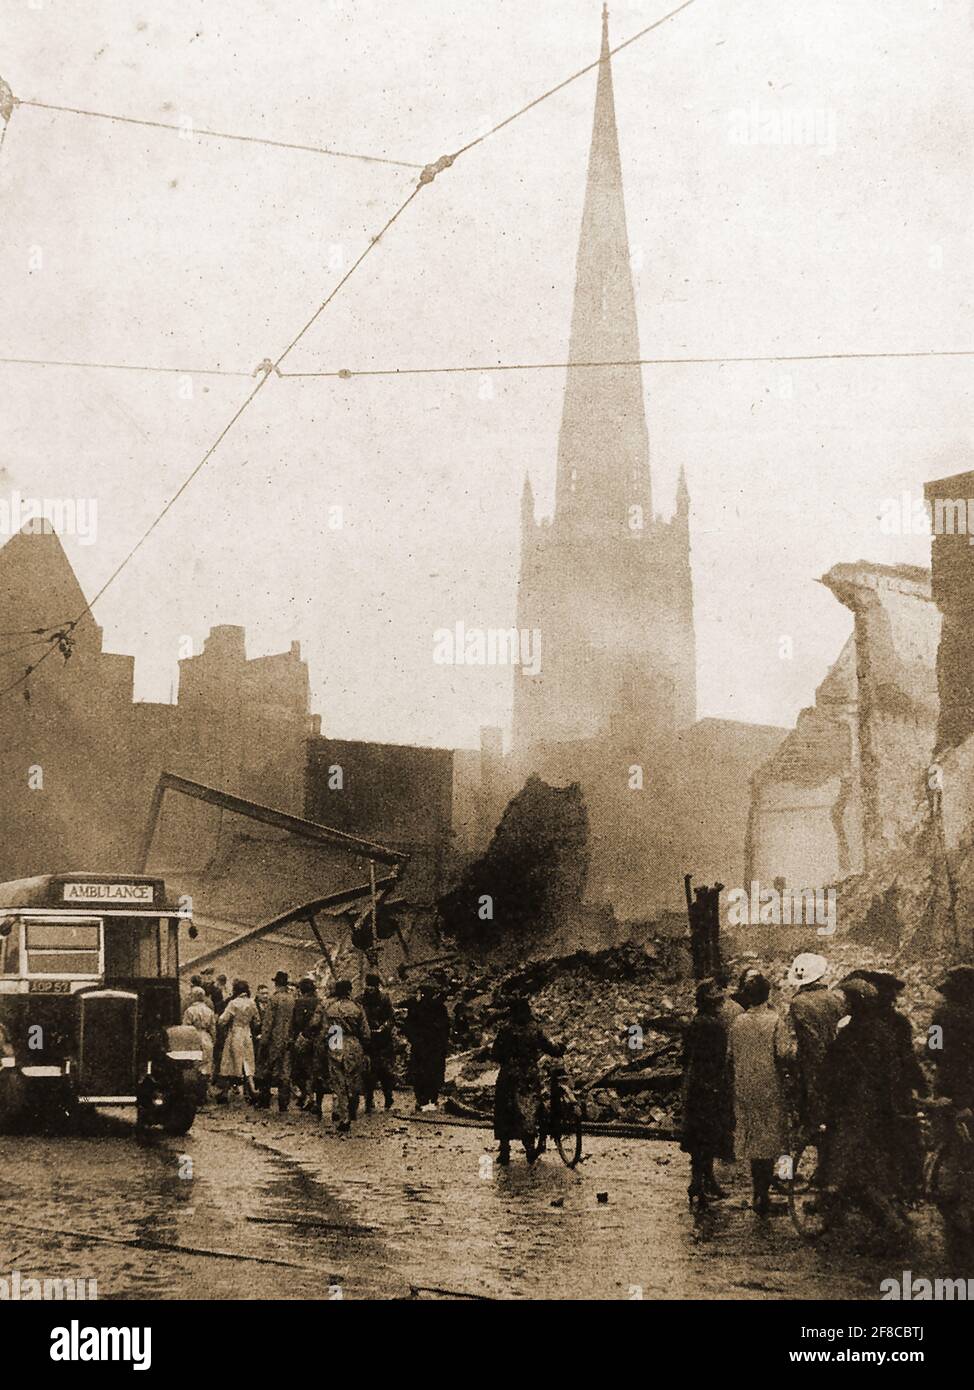 Novembre 1940 -Seconde Guerre mondiale -UNE scène après le RAID aérien massif sur Coventry par des bombardiers allemands. Un bus hs a été commissionné comme une ambulance pour ramasser les survivants et traiter les blessés Banque D'Images